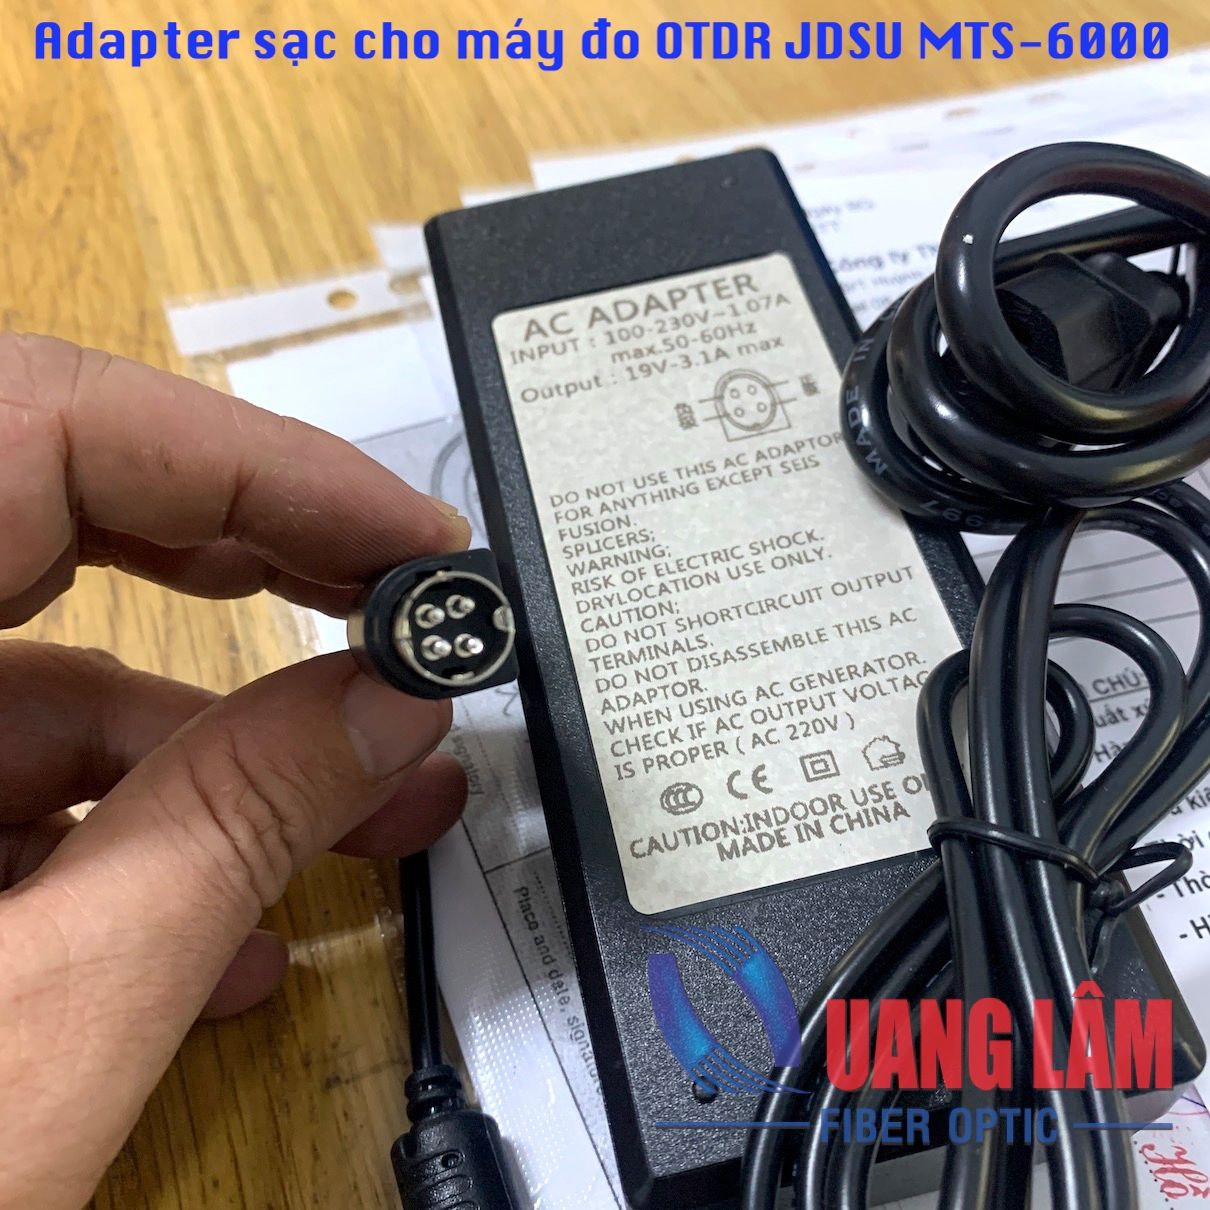 Adapter sạc cho máy đo OTDR JDSU MTS-6000